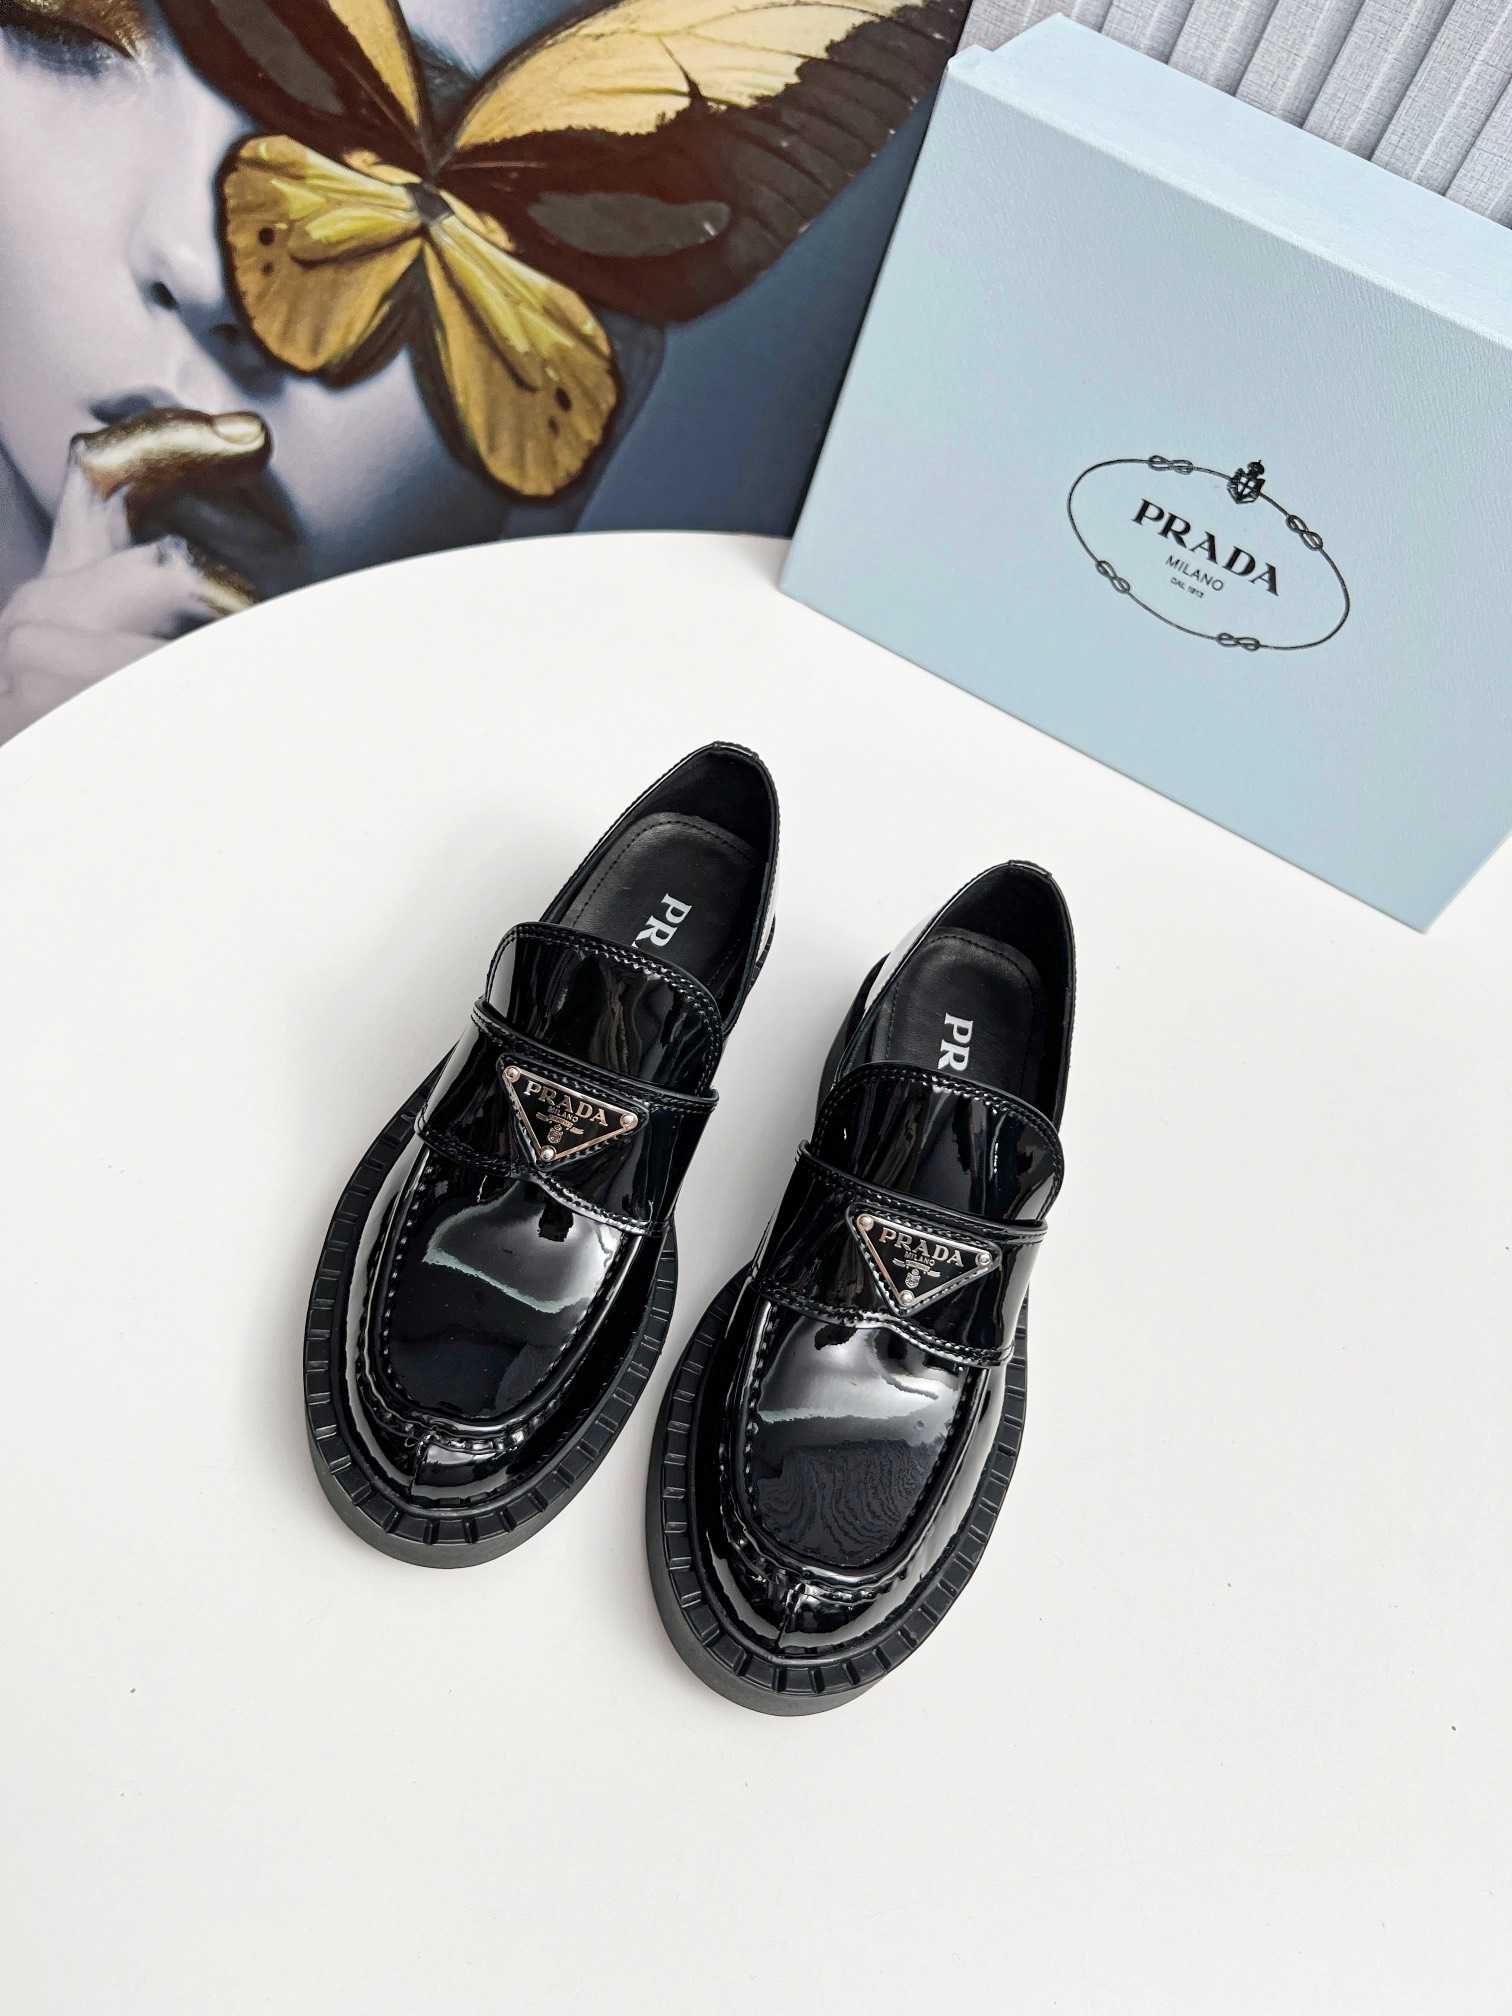 Pantofi loafer Prada, marimi 35-40, mocasini Premium